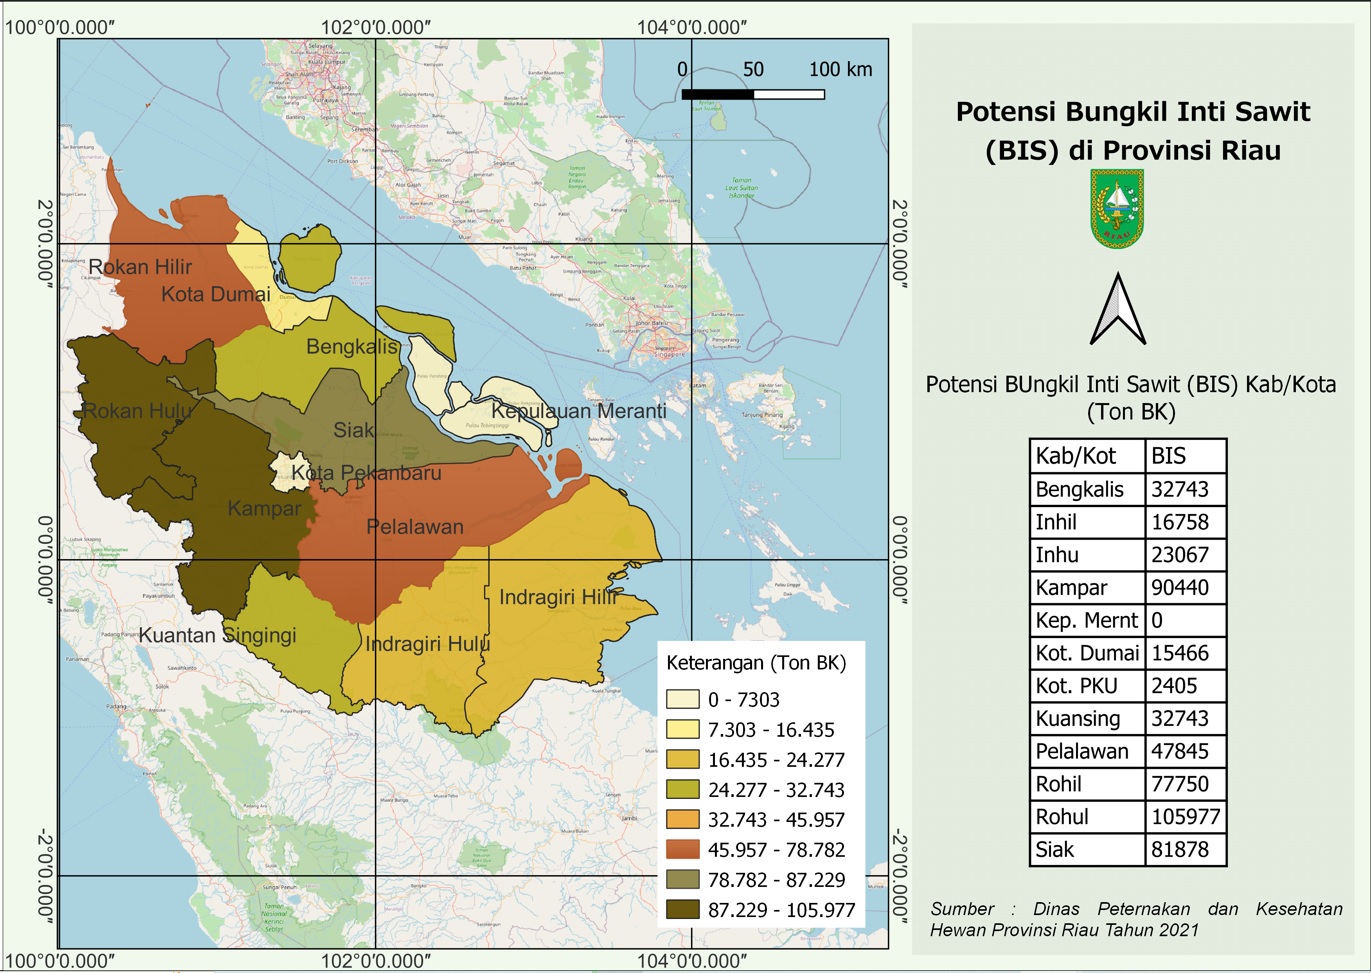 Potensi BIS di Provinsi Riau